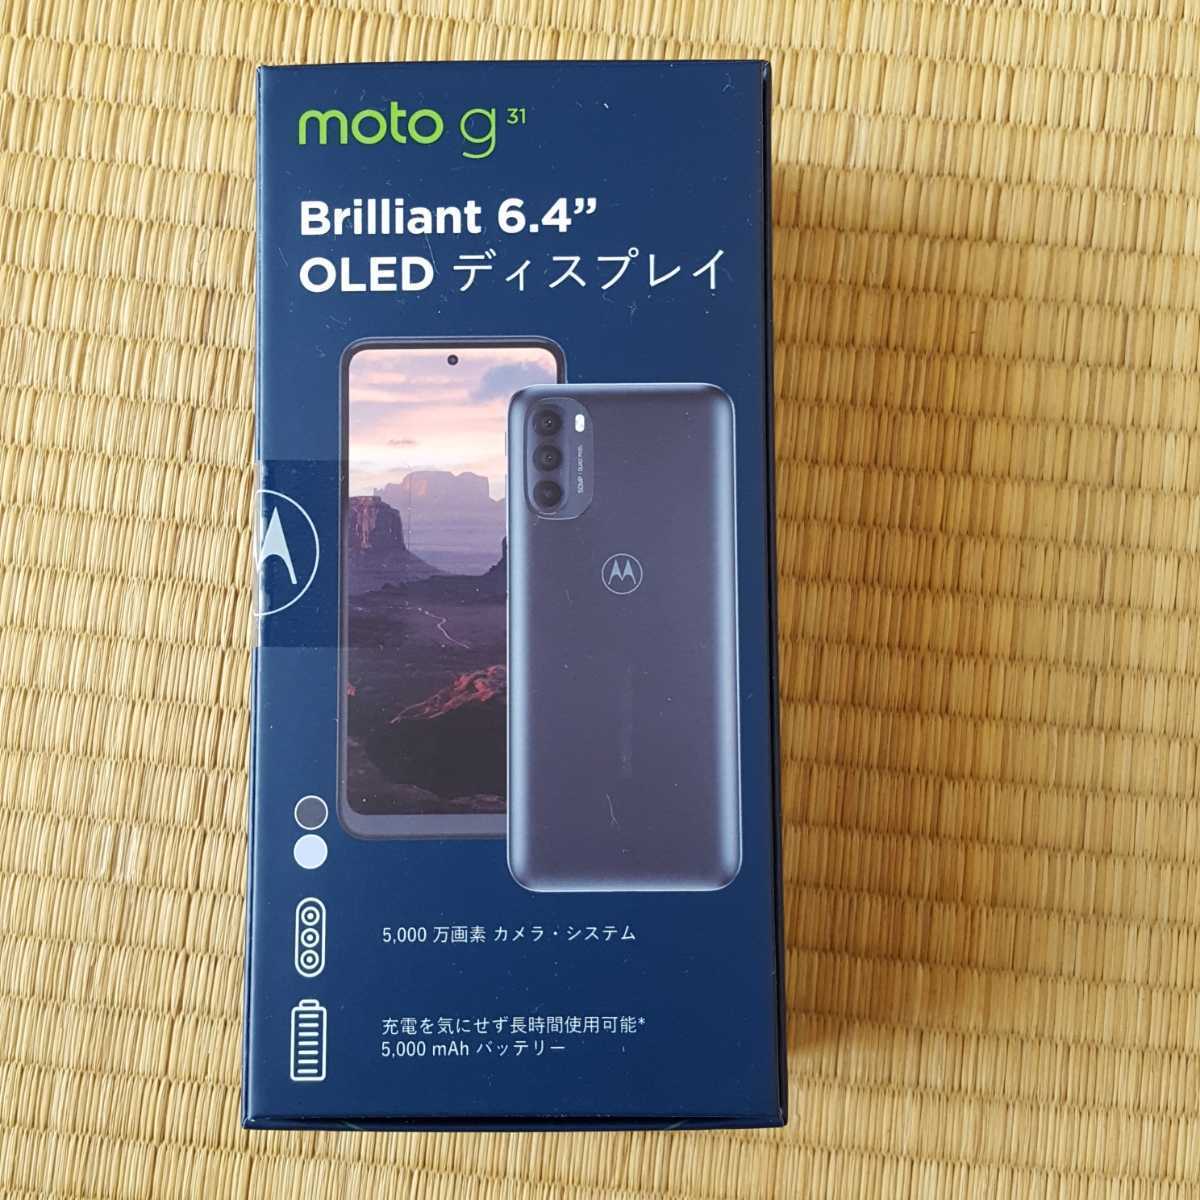 新品未開封 今年1月発売 Motorola スマホ motog31 ミネラルグレイ Android11 フルHD有機EL液晶 SIMフリー版 その4